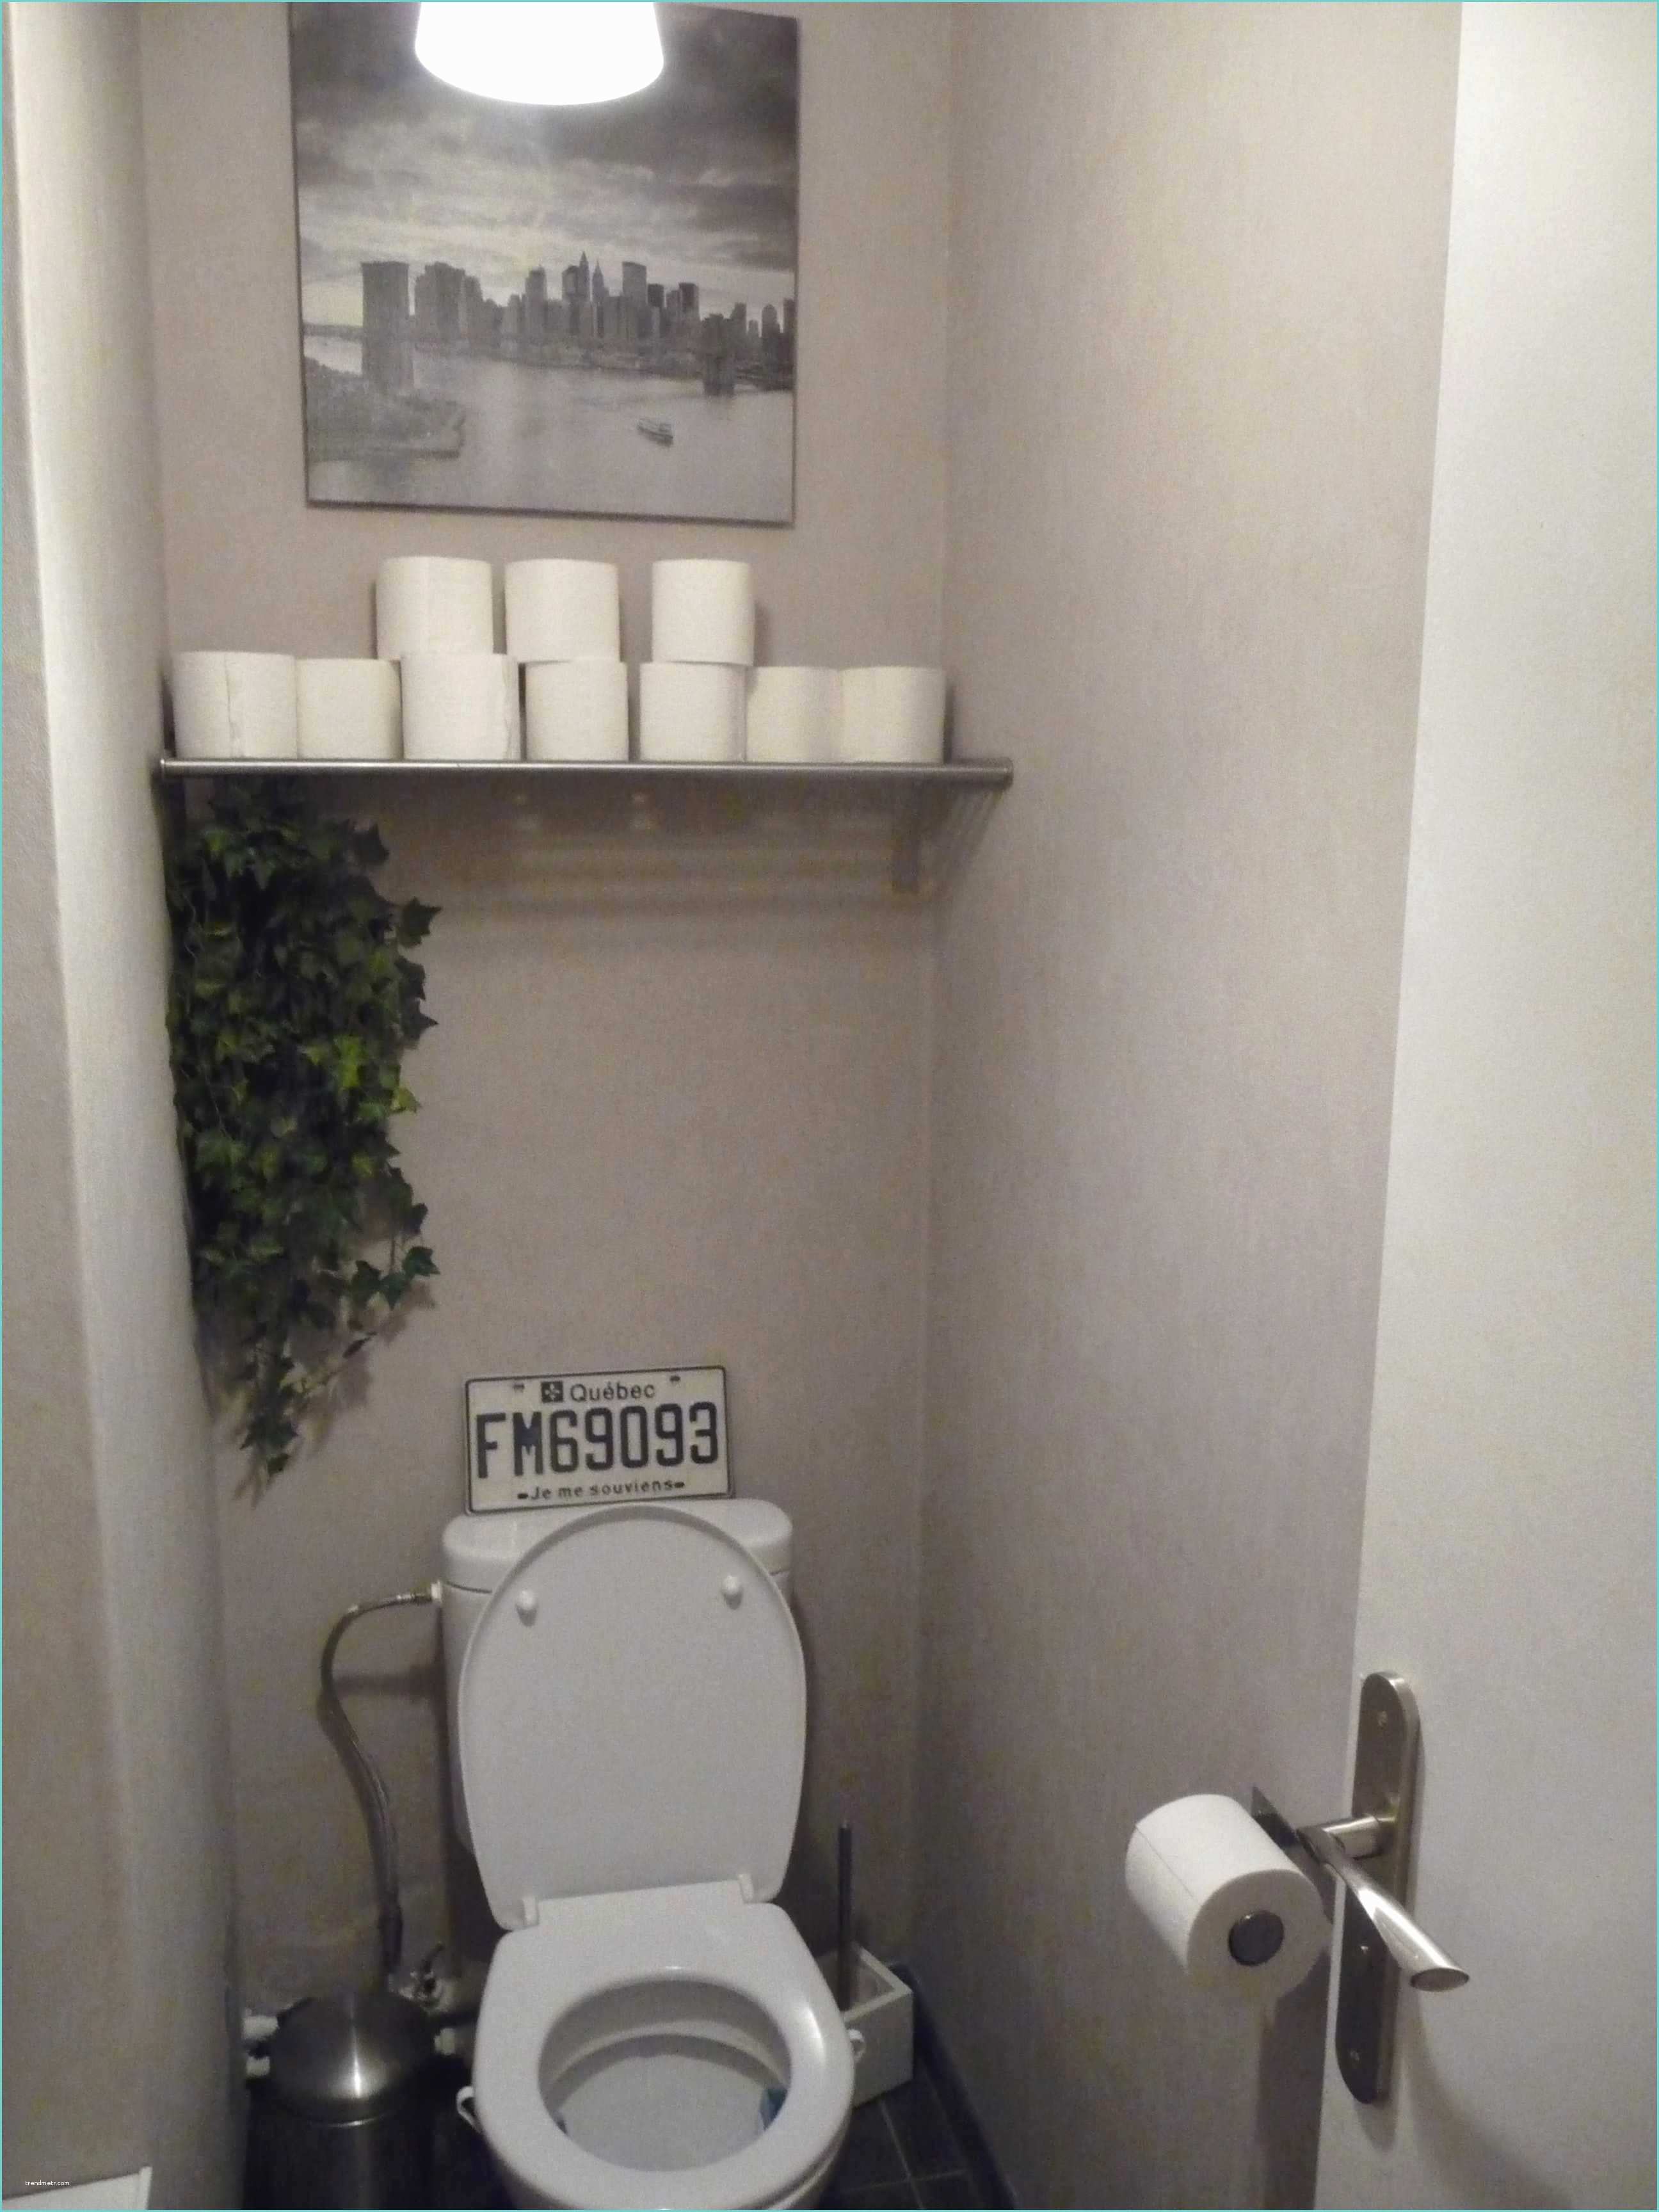 Ide Dco Pour Petit Wc Deco Wc Moderne Deco Wc Moderne Dco toilette Ide Et